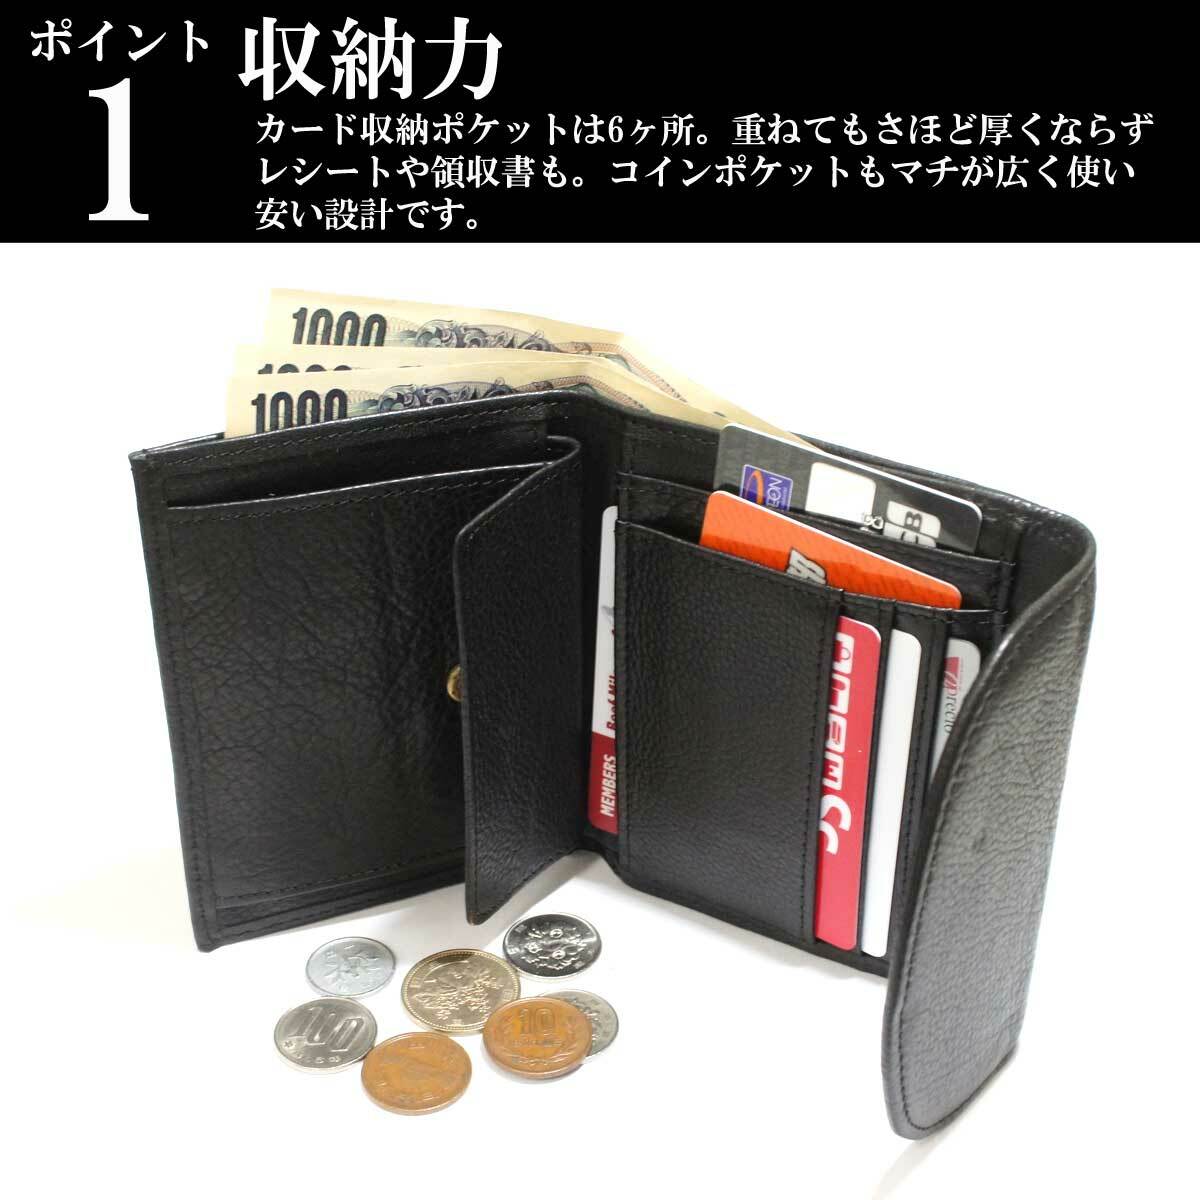 百万 他の日 ひばり カード が たくさん 入る 二 つ折り 財布 ブランド - kisura.jp